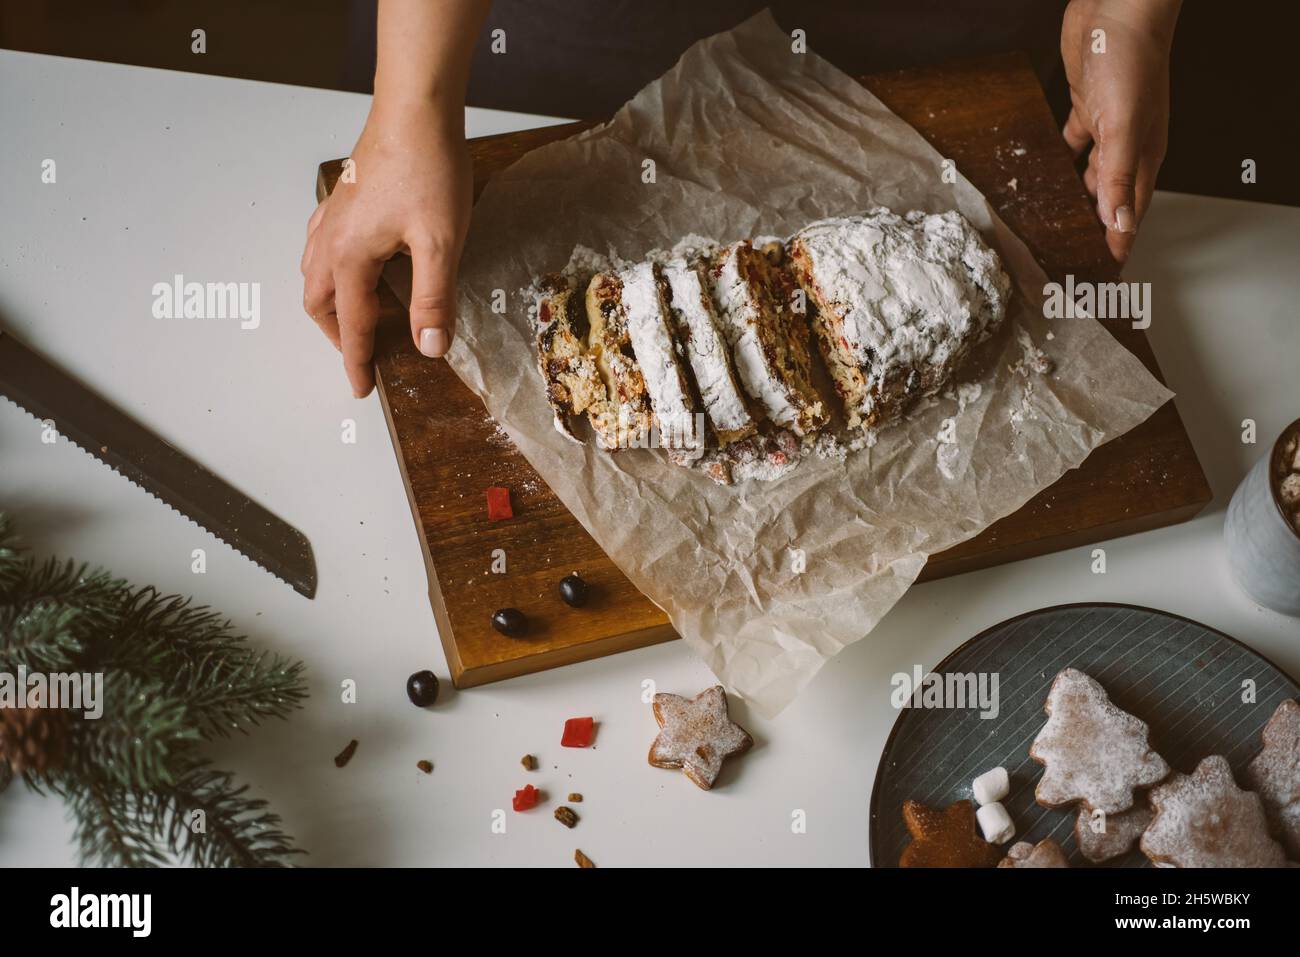 Femme sert des pâtisseries de Noël, stollen sur une planche de bois.Photo d'ambiance de préparation pour les vacances, vue de dessus, mise au point sélective Banque D'Images